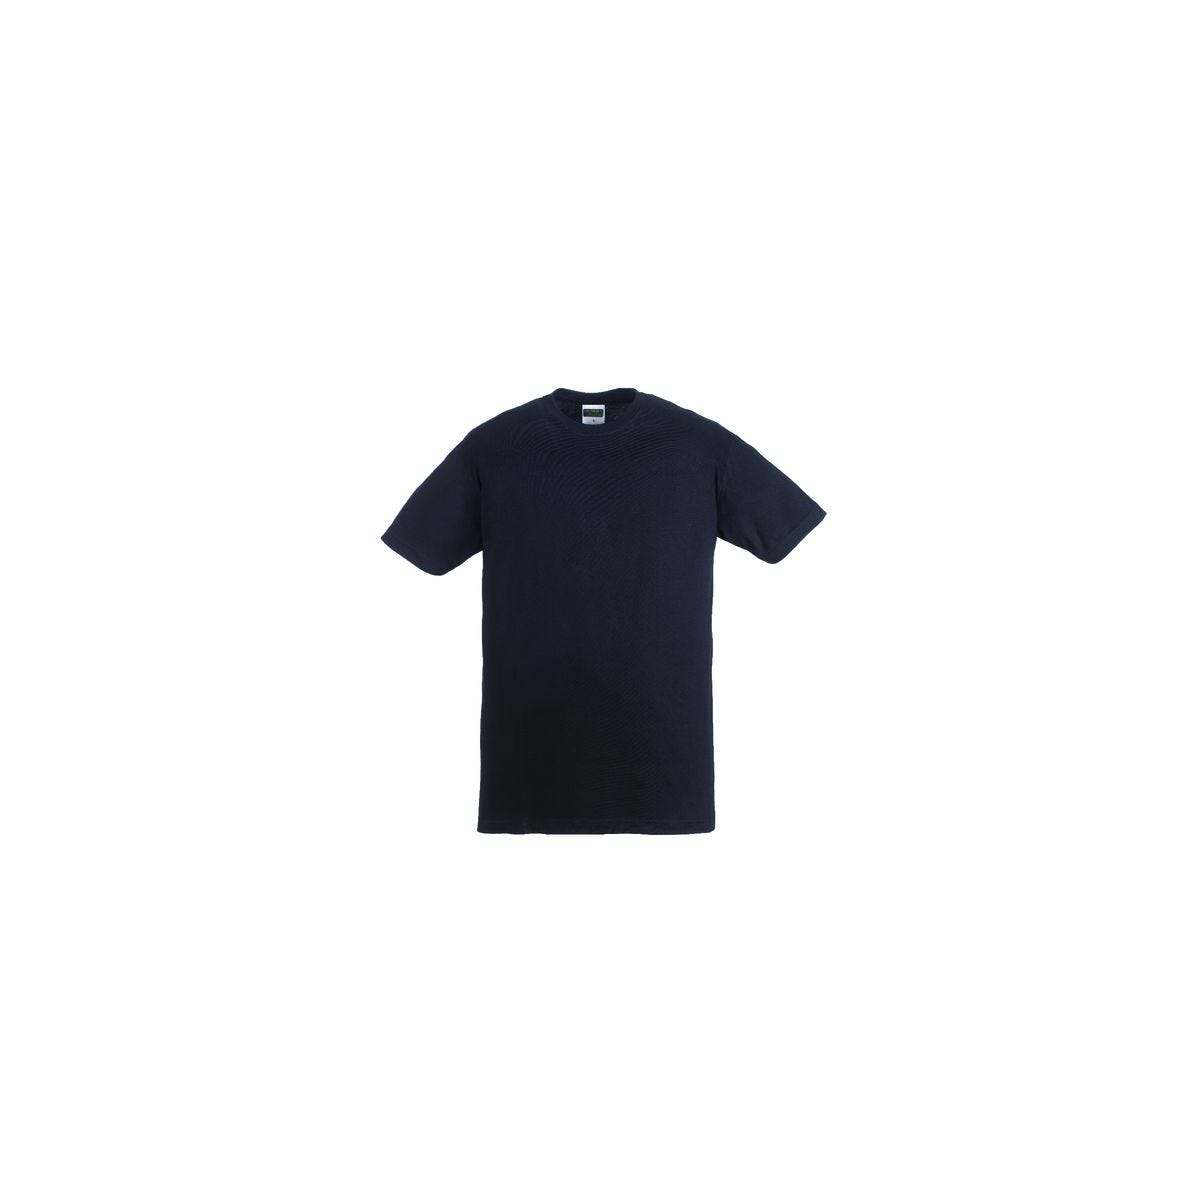 T-shirt TRIP MC noir - COVERGUARD - Taille S 0